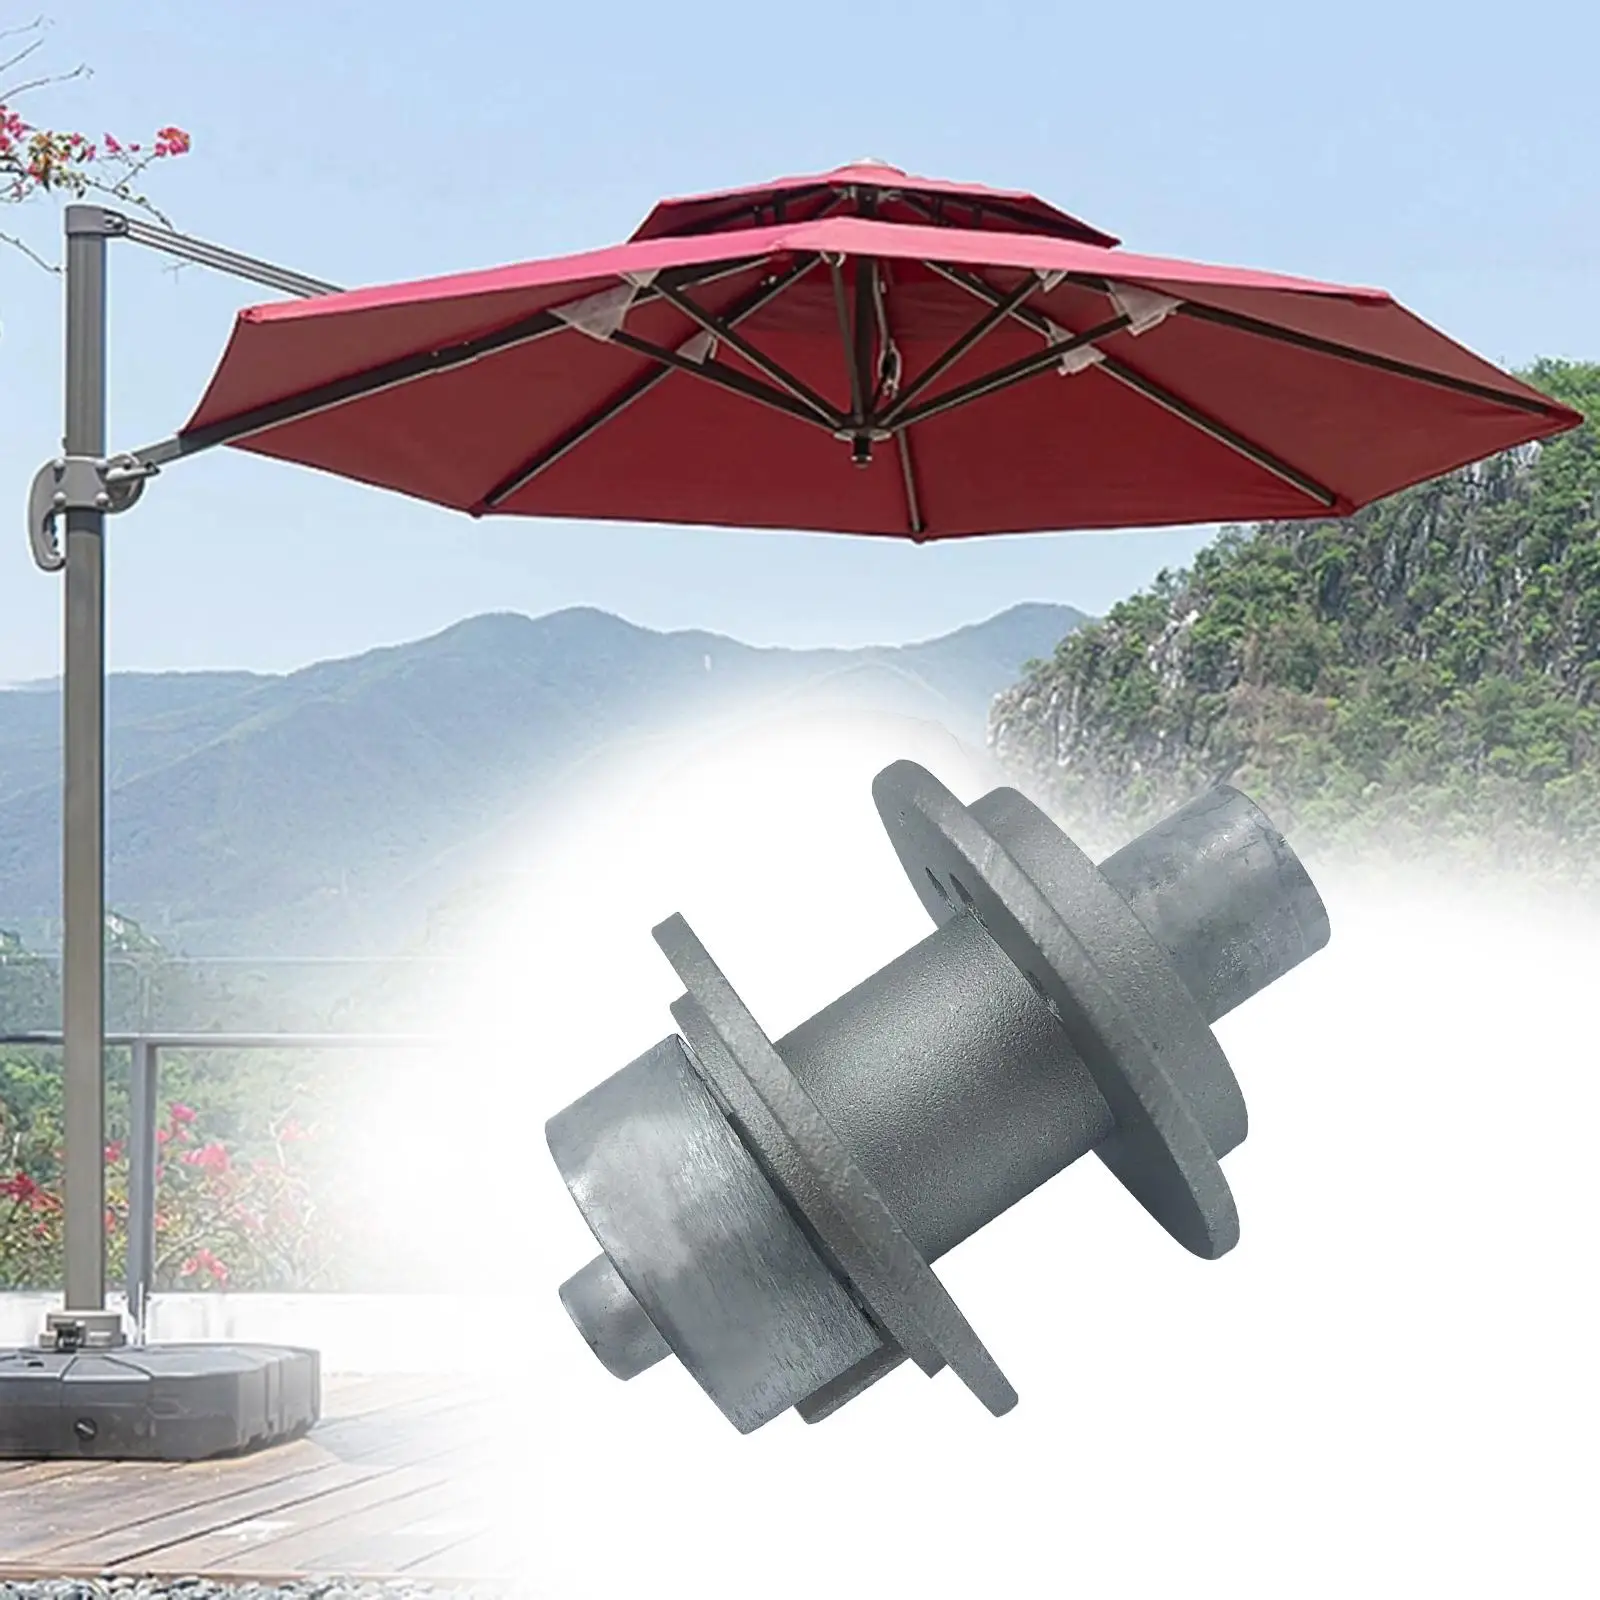 Patio Umbrella Accessories Umbrella Attachment Handrail Coil Ring And Reel Rod